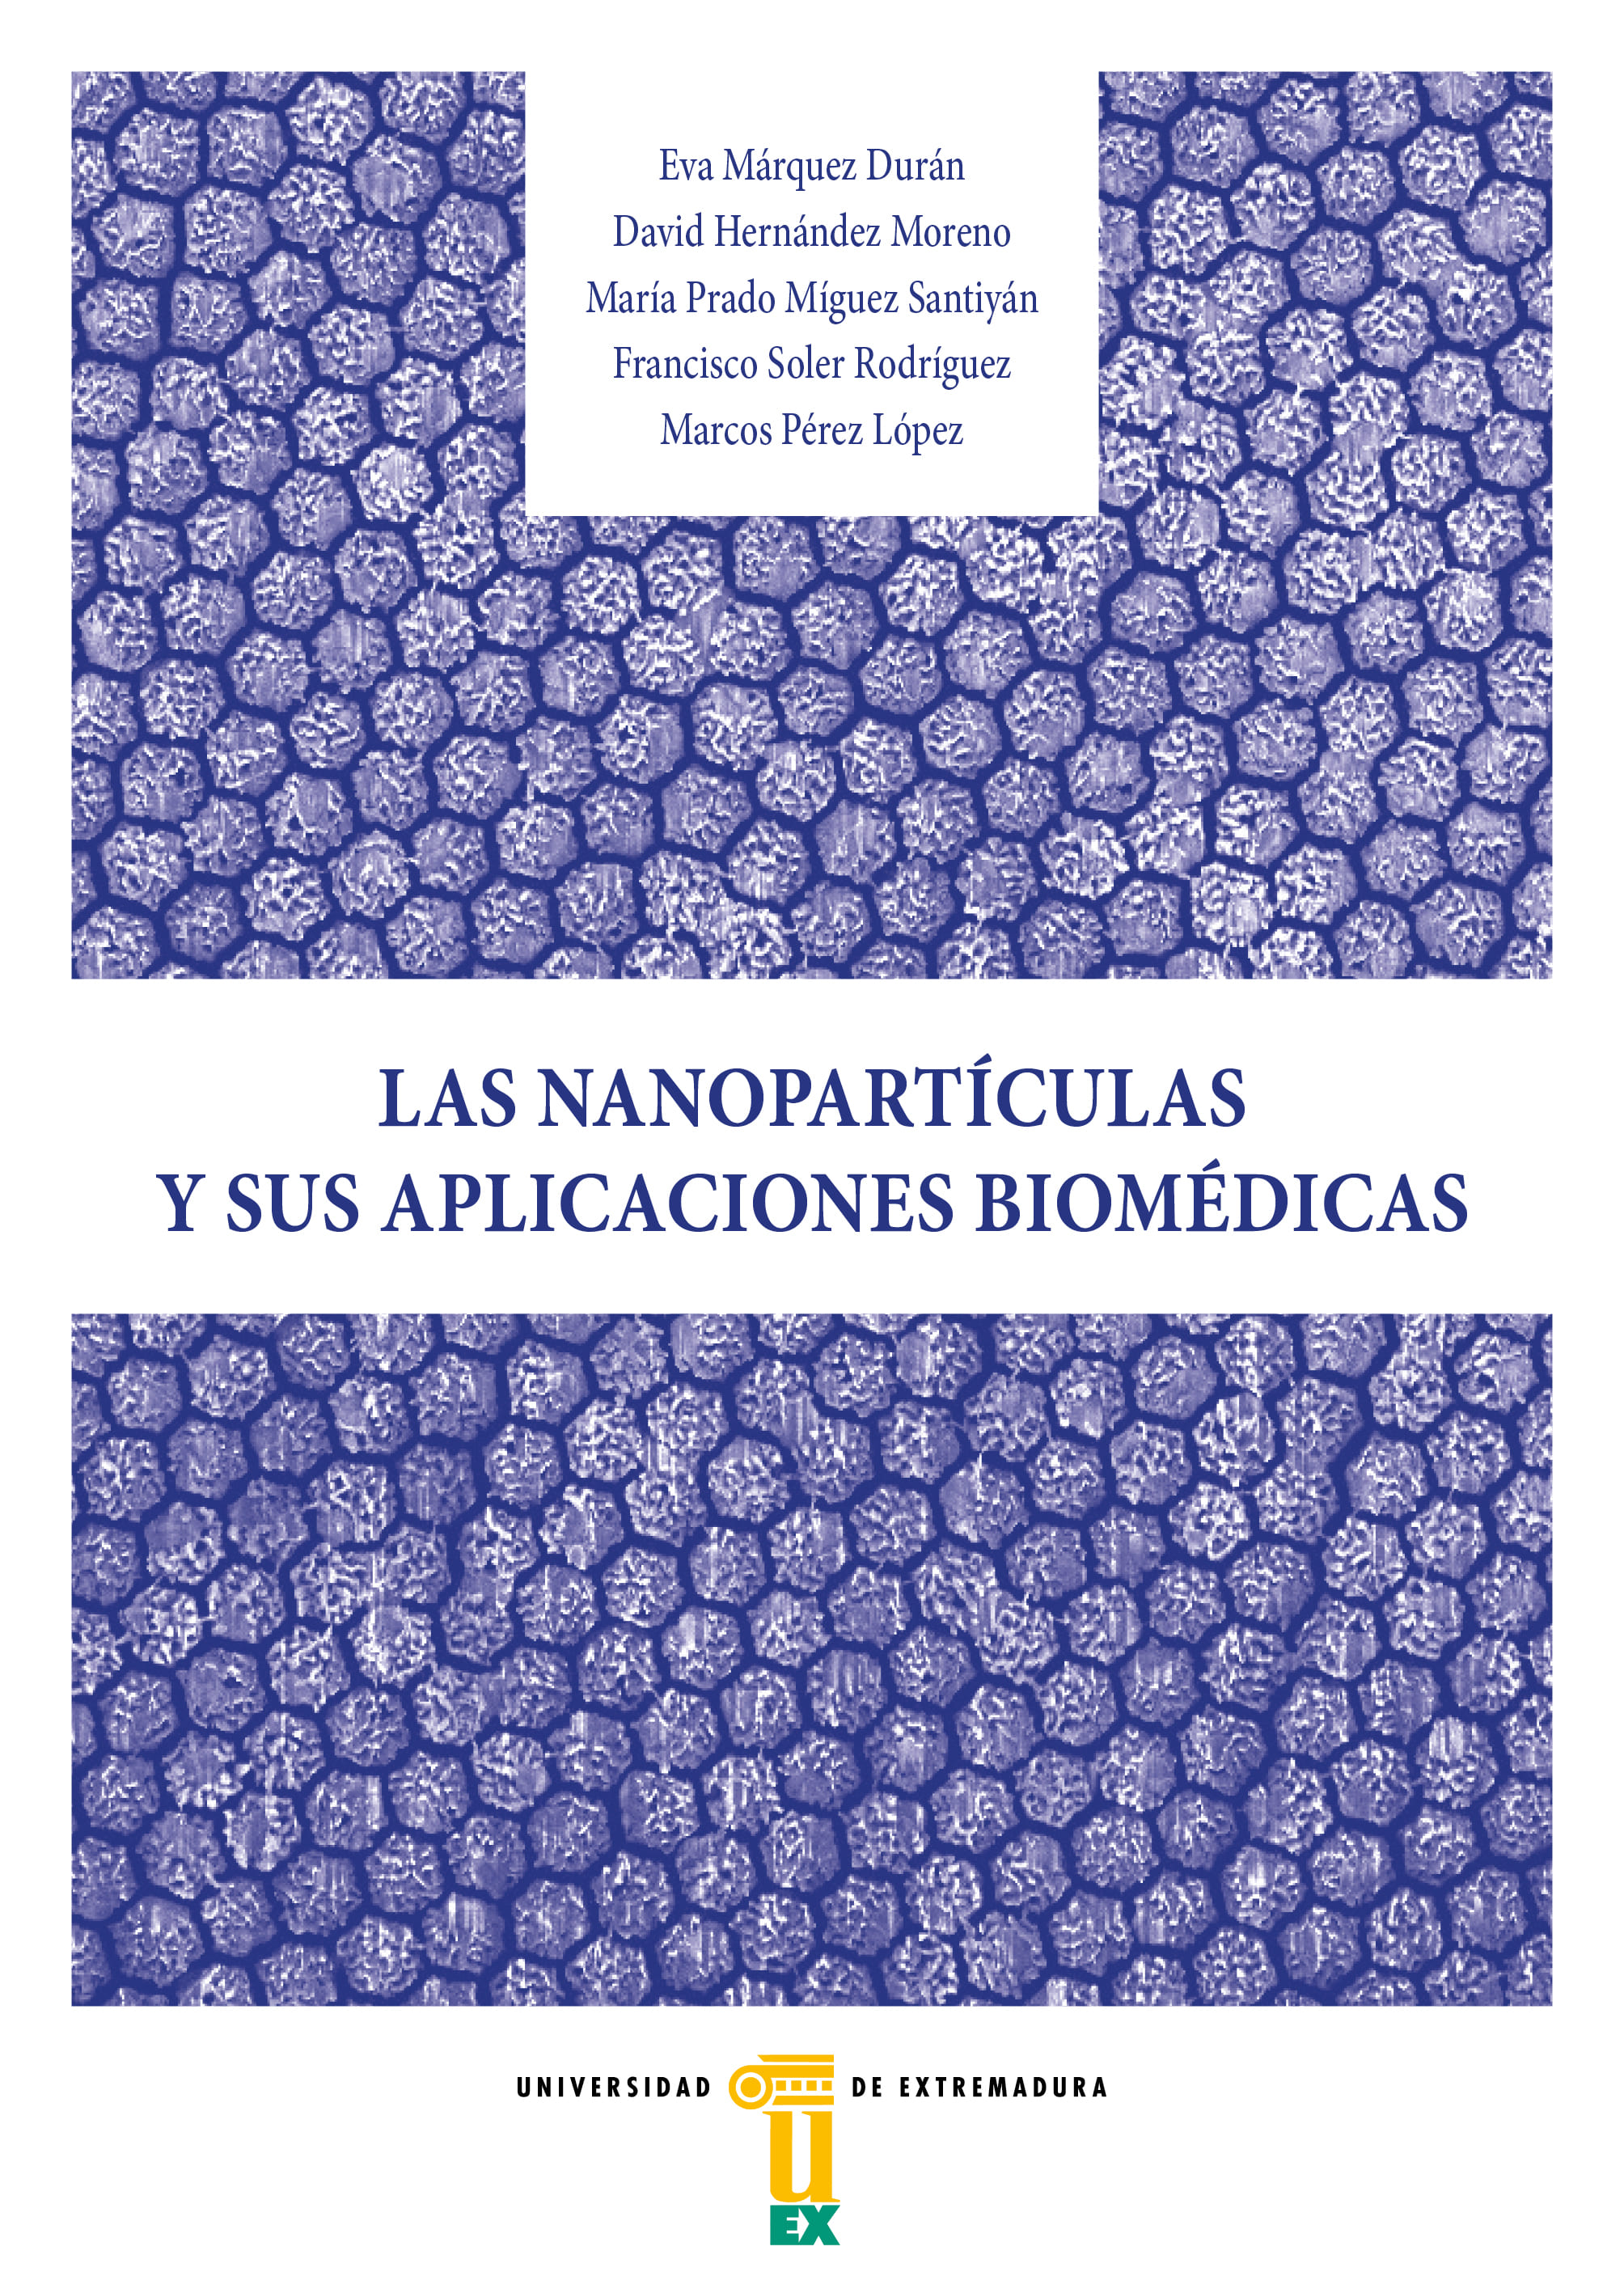 Imagen de portada del libro Las nanopartículas y sus aplicaciones